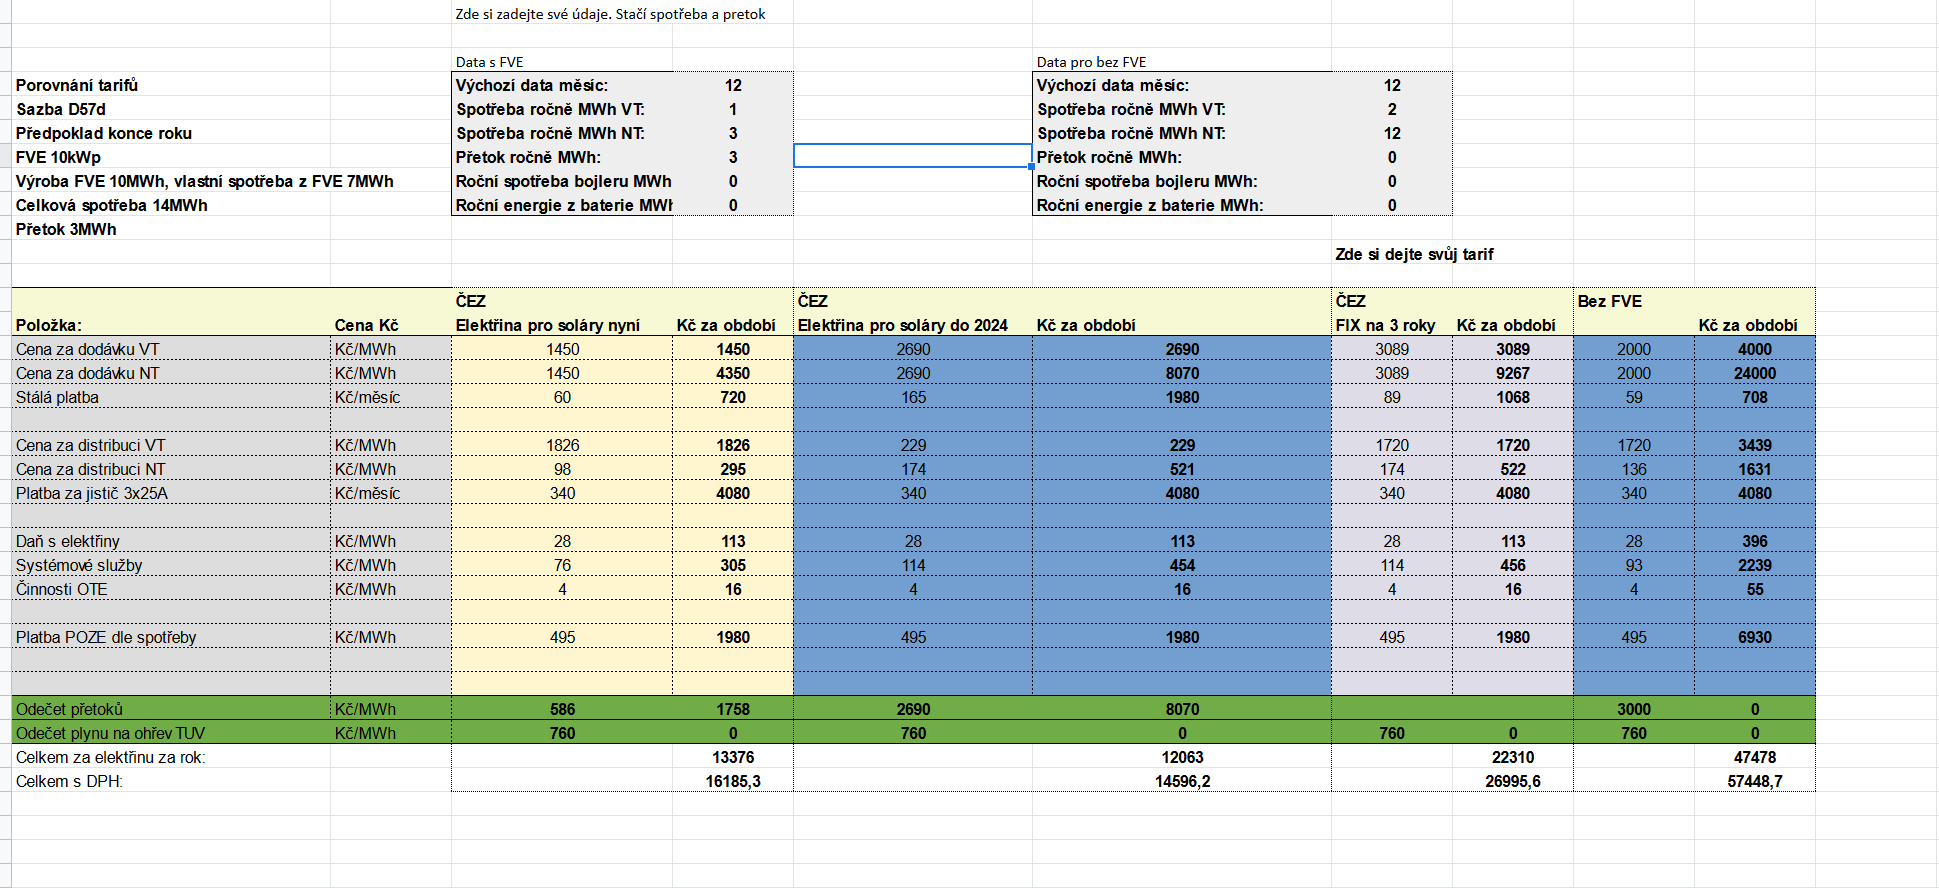 Screenshot 2022-01-21 at 16-22-17 Porovnání tarifů virtuální baterie od ČEZu a ostatních xlsx.png